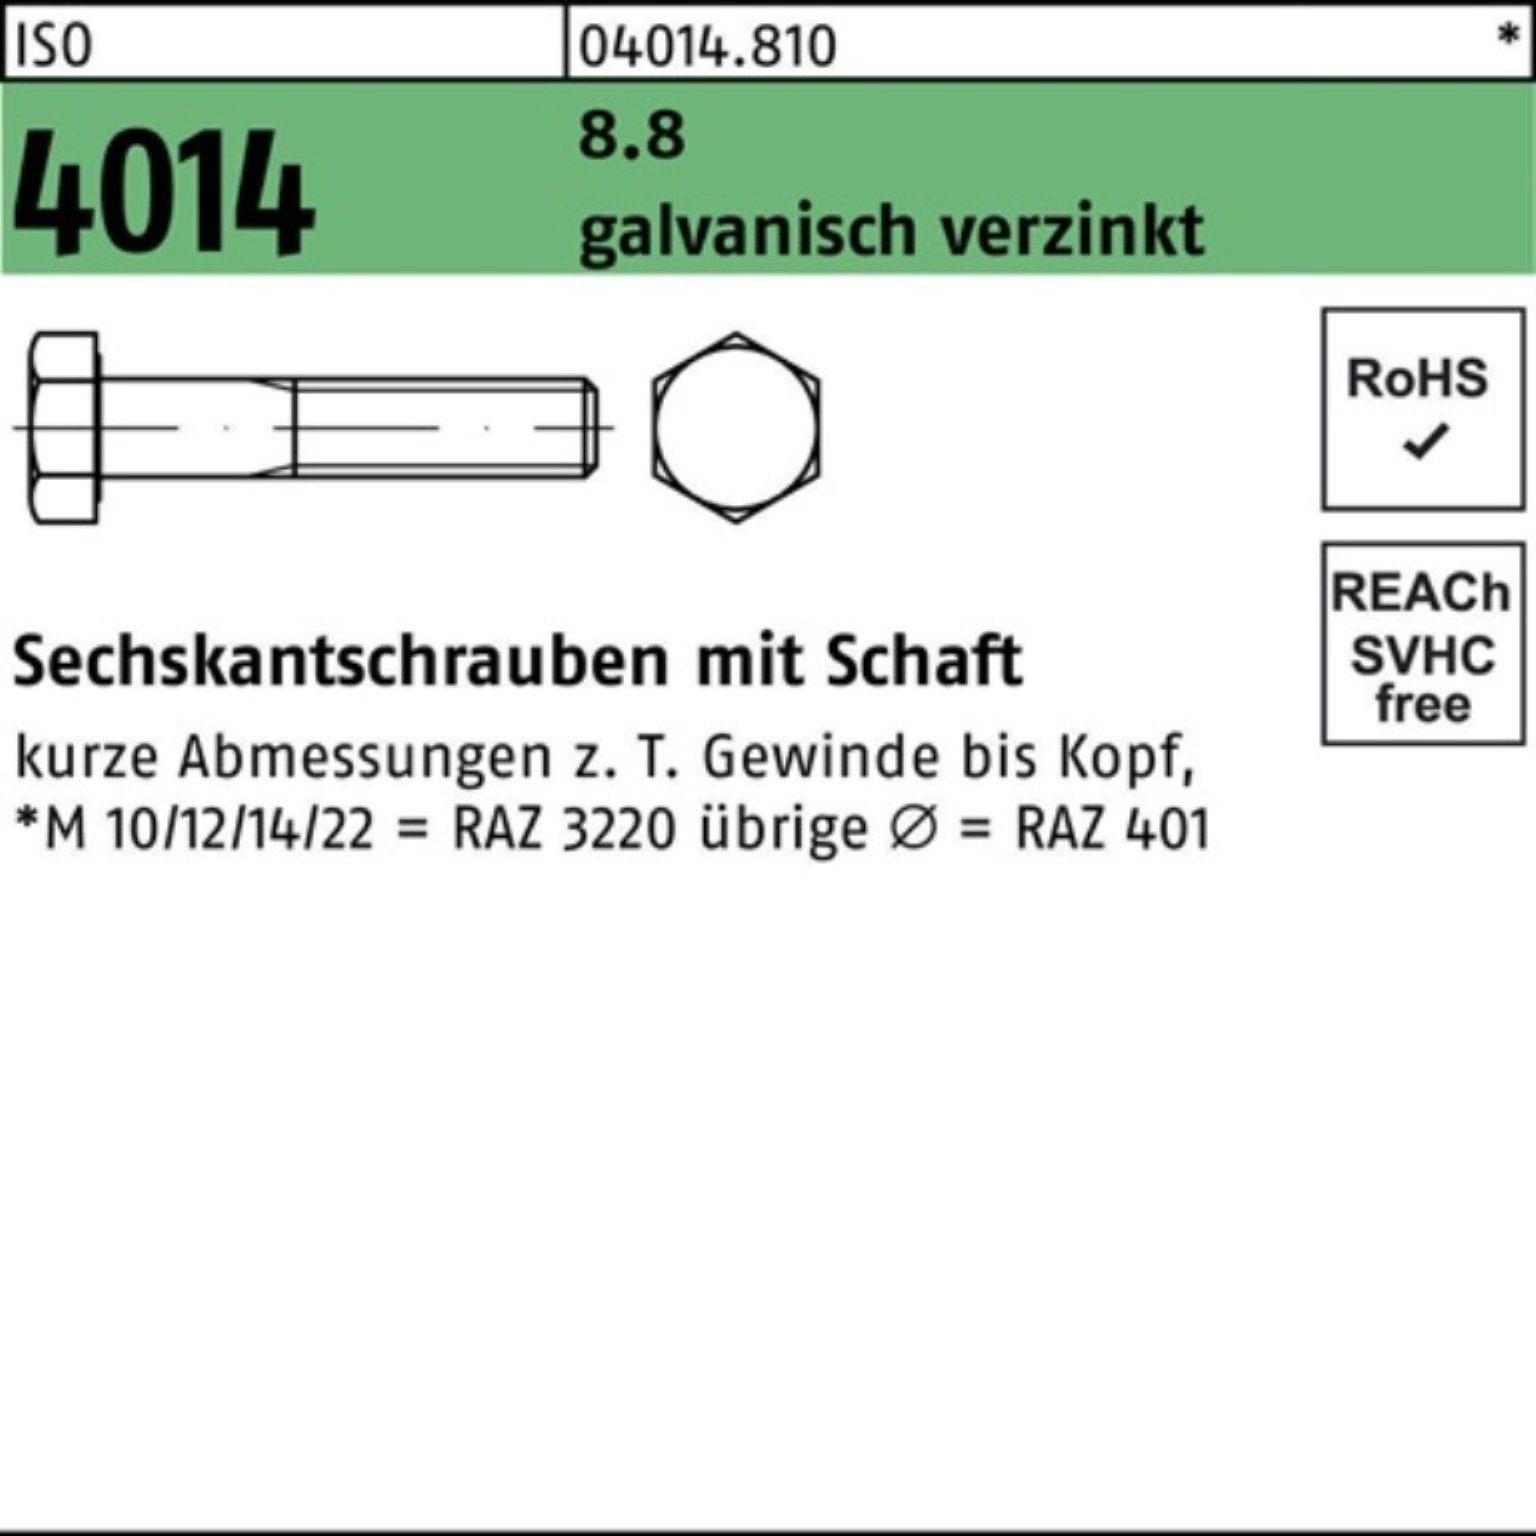 Bufab Sechskantschraube Pack Sechskantschraube Schaft M33x 4014 galv.verz. 110 1 8.8 100er ISO